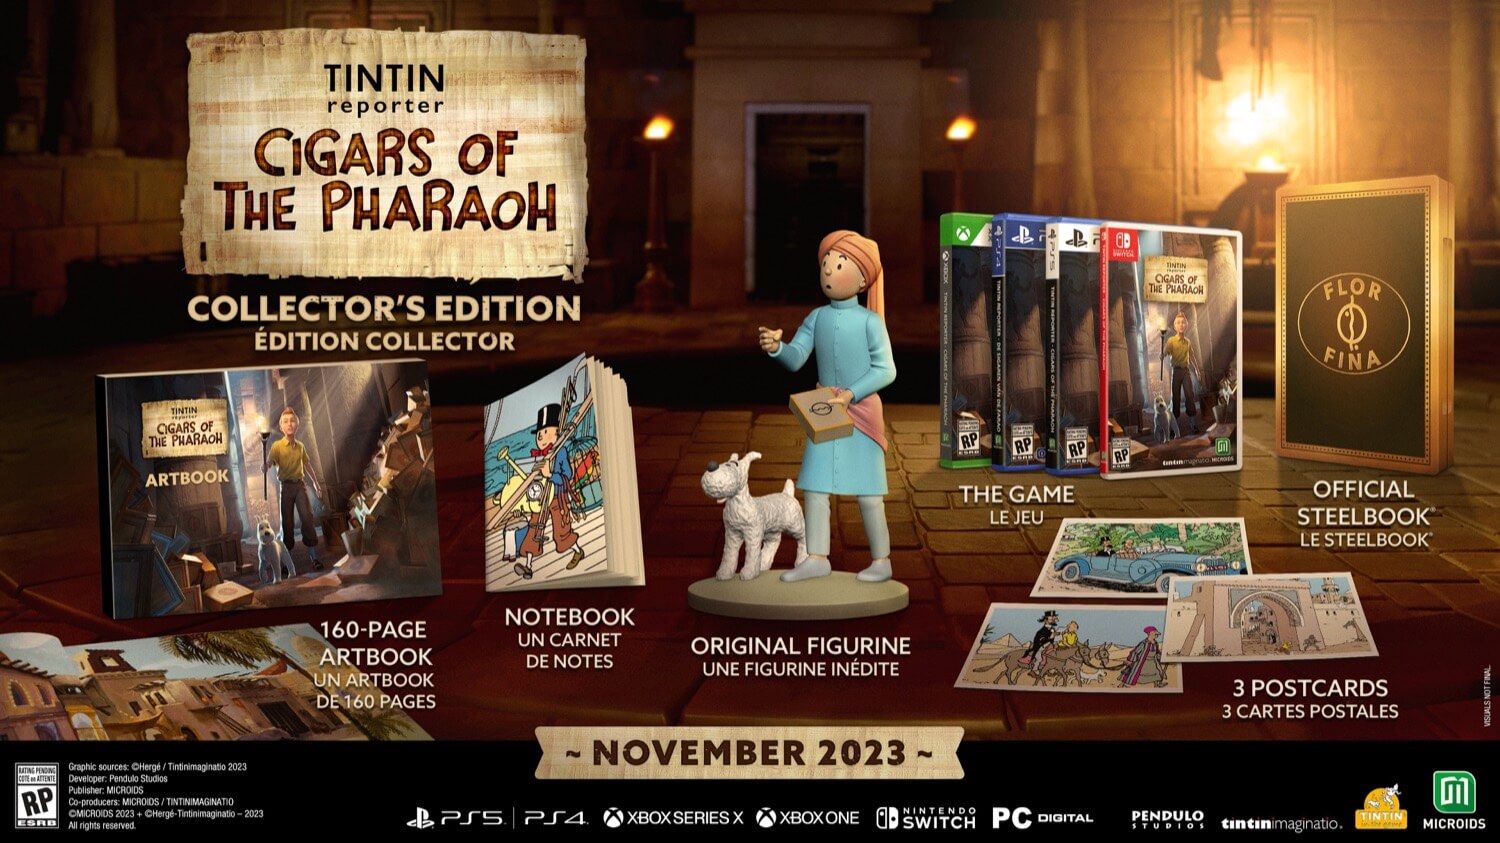 Объявлена дата релиза Tintin Reporter: Cigars of the Pharaoh на Xbox: с сайта NEWXBOXONE.RU